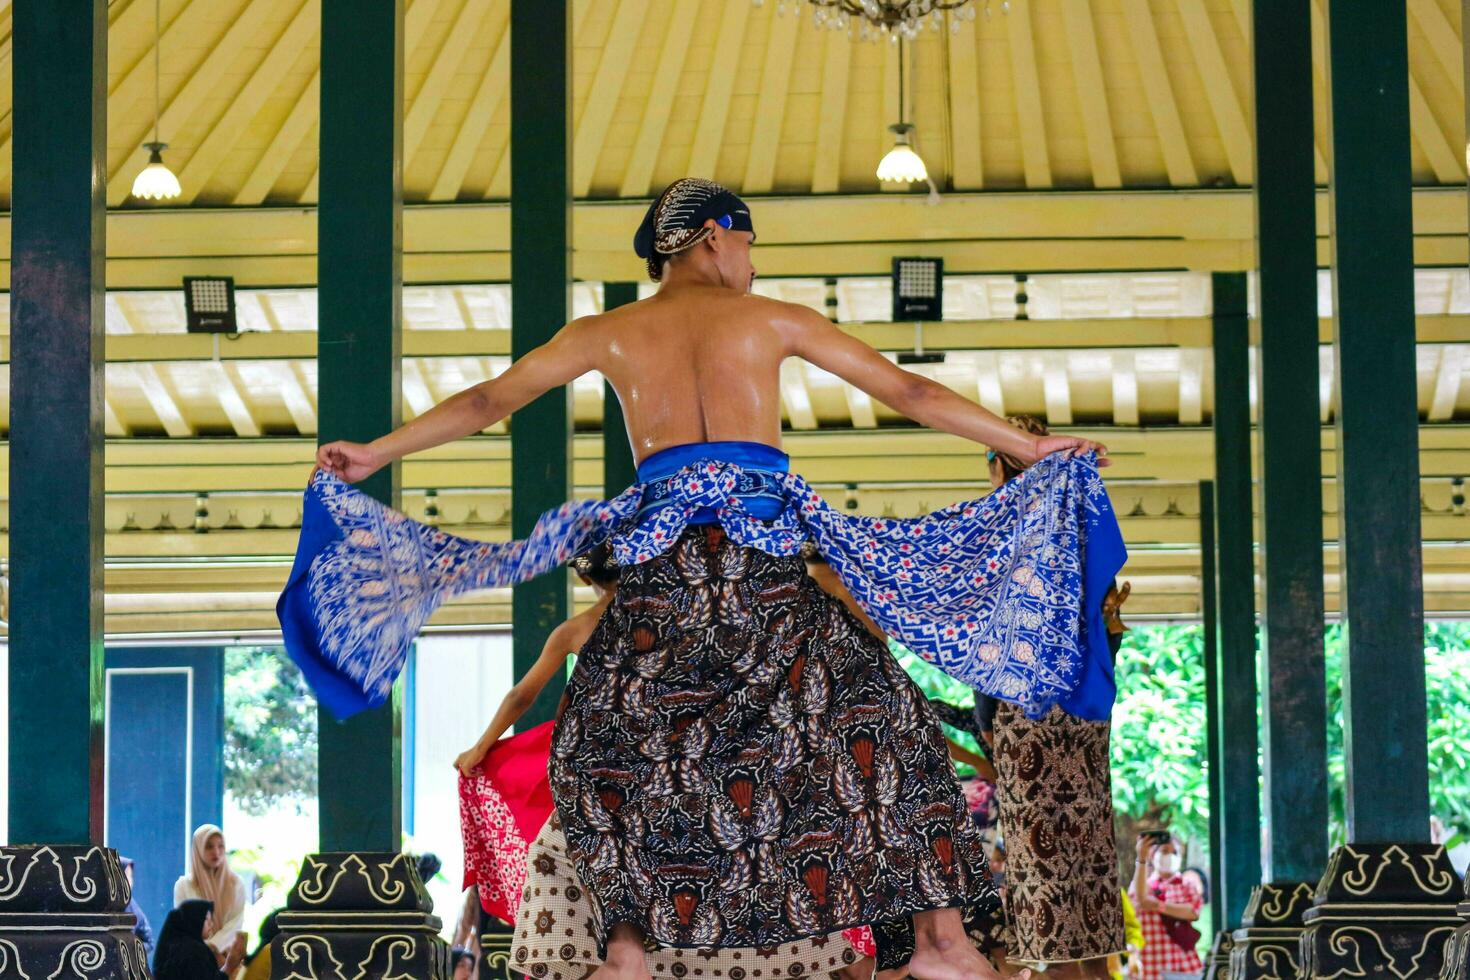 yogyakarta, Indonesia en octubre 2022. abdi dalem mataya, cortesanos de el yogyakarta palacio quien son bailarines t foto